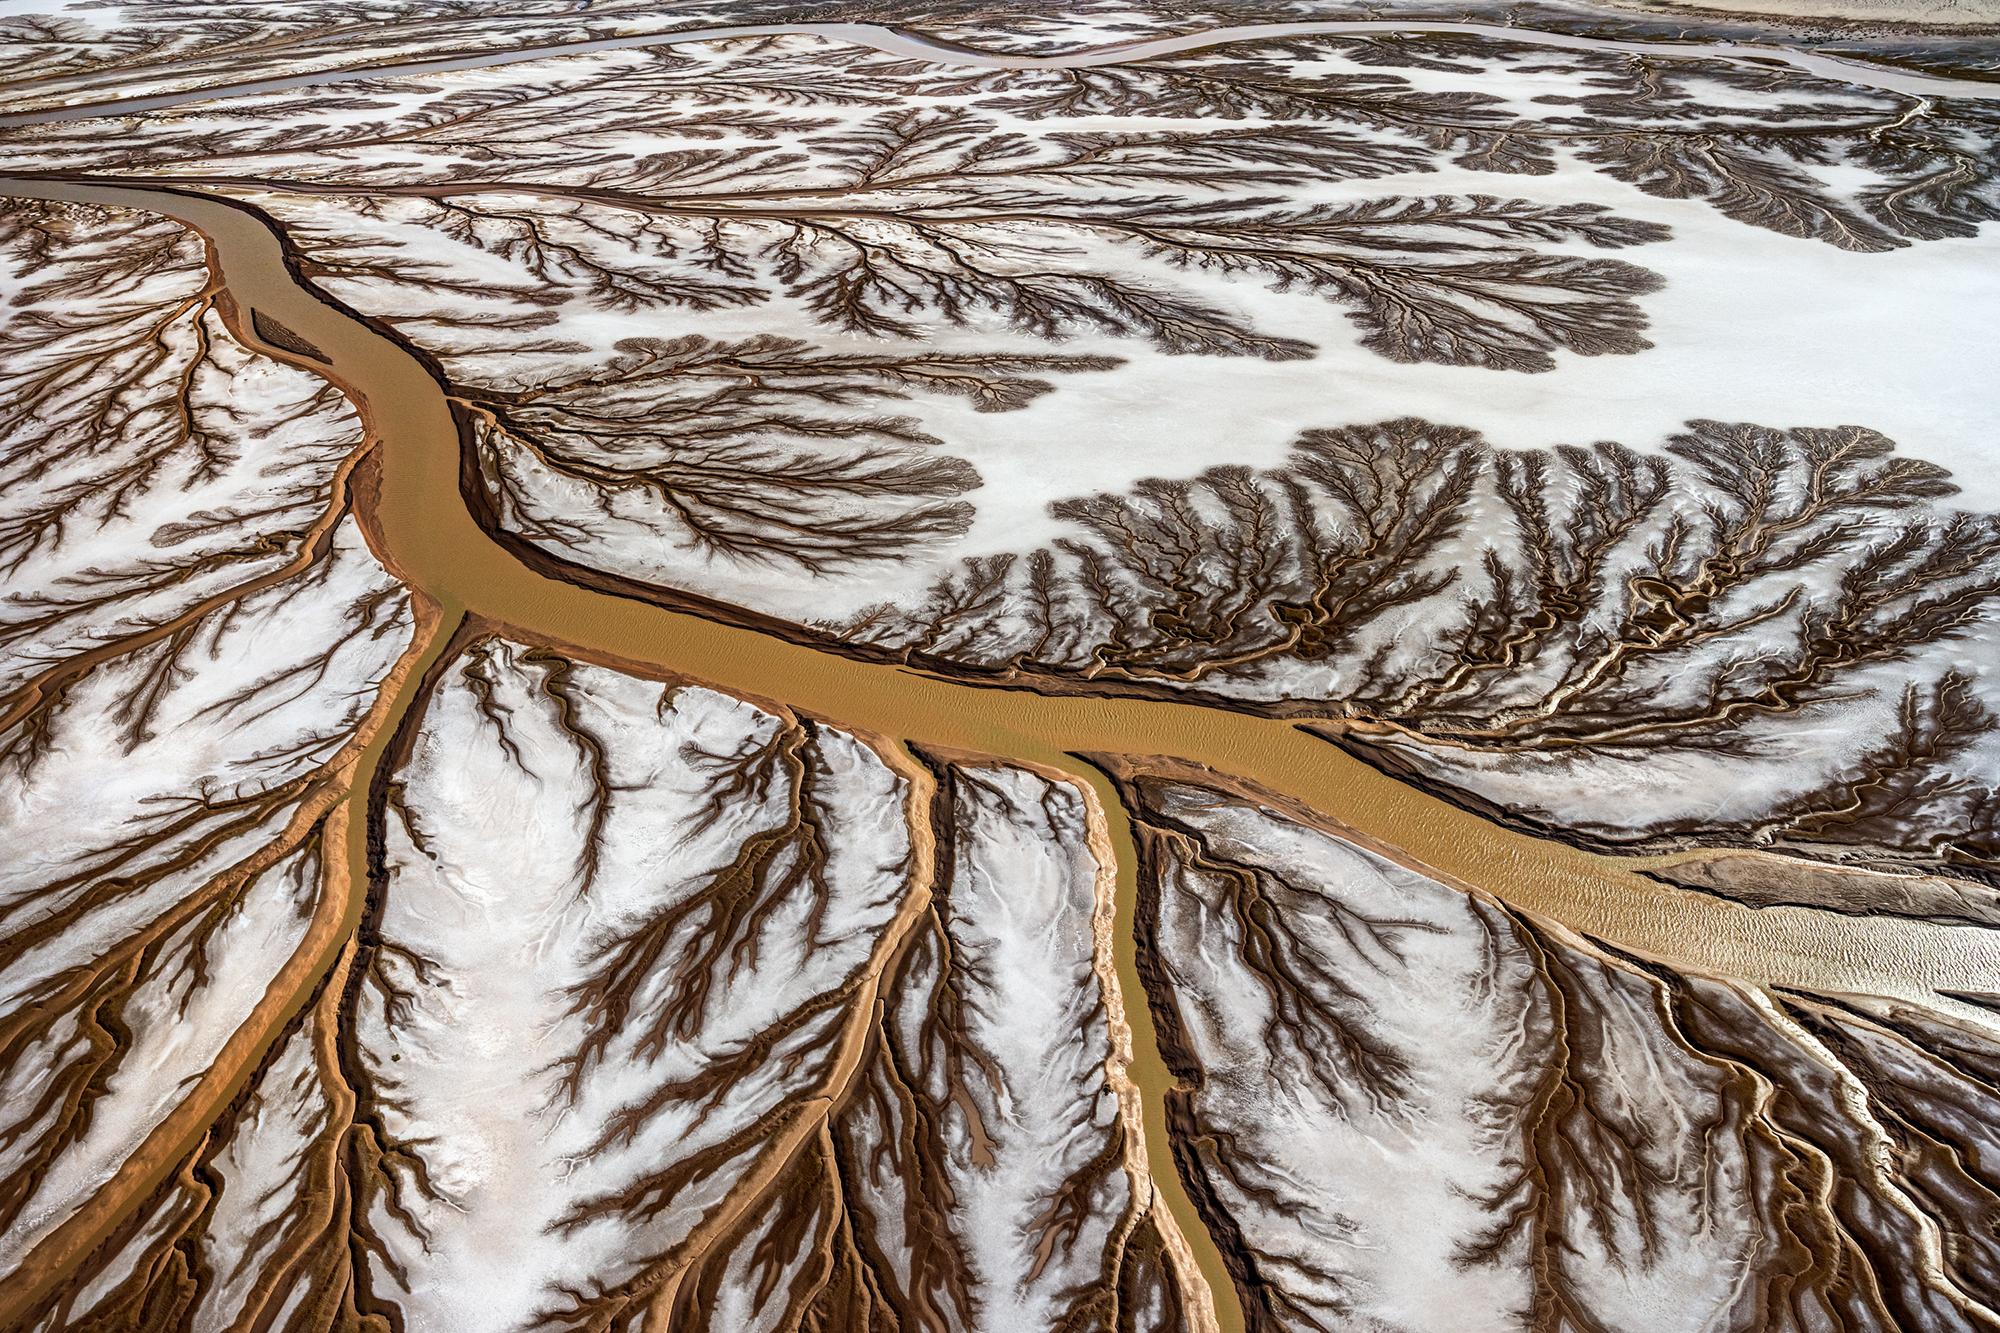 Paul Nicklen Landscape Photograph - Amber Crossroads